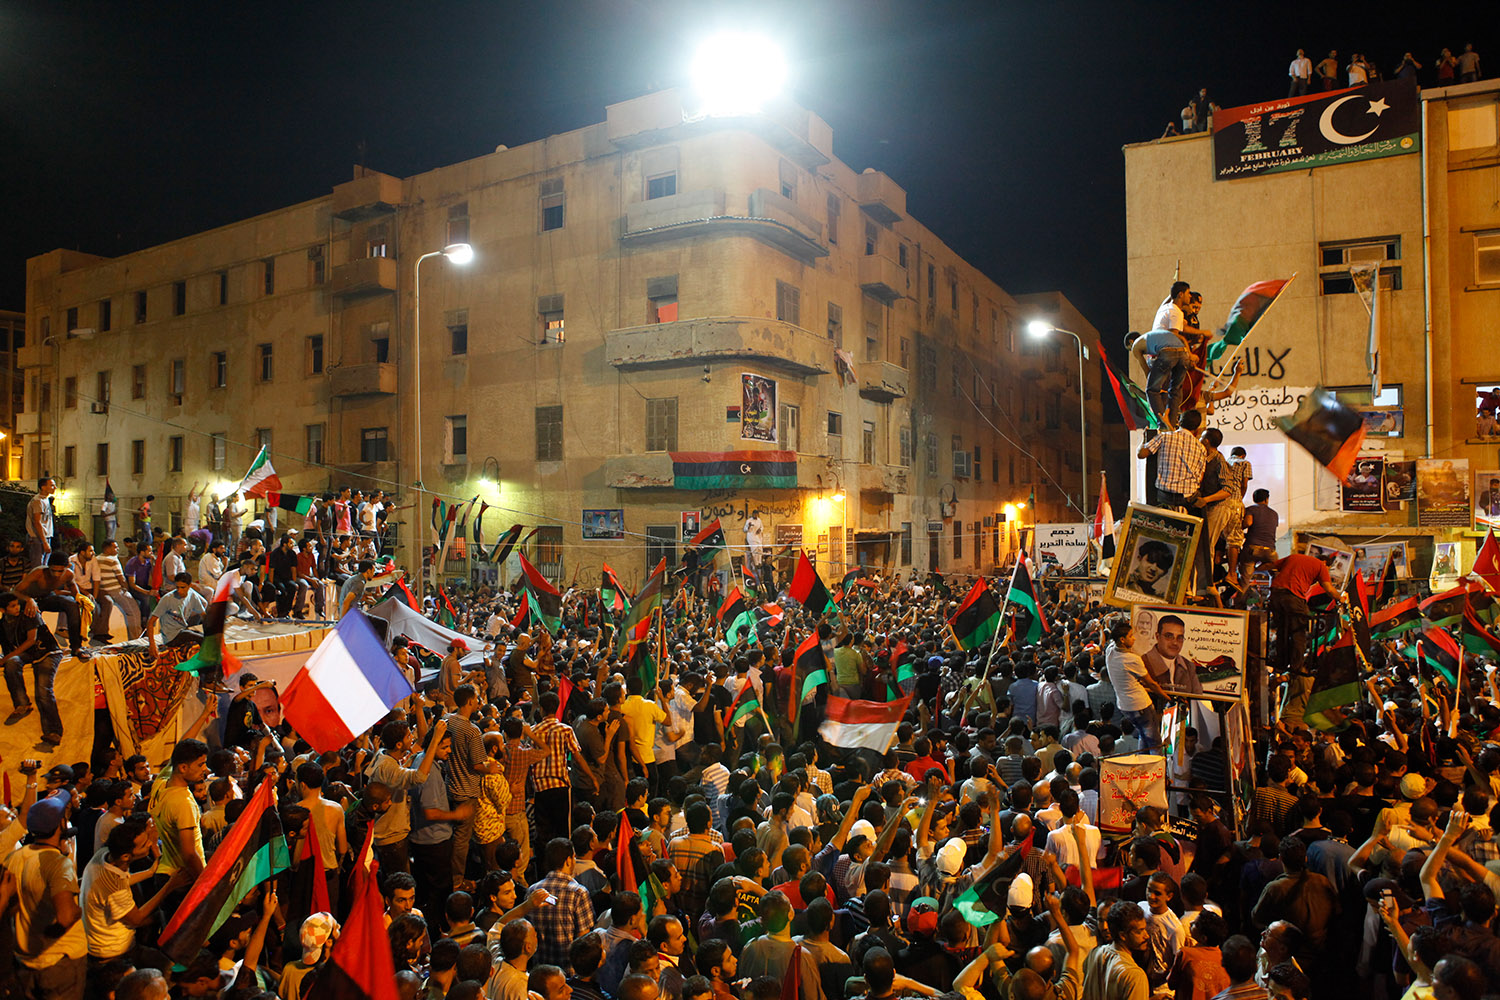 Les rebelles libyens à Benghazi en août 2011. La manifestation a lieu la nuit. On voit des drapeaux français parmi les drapeaux libyens.